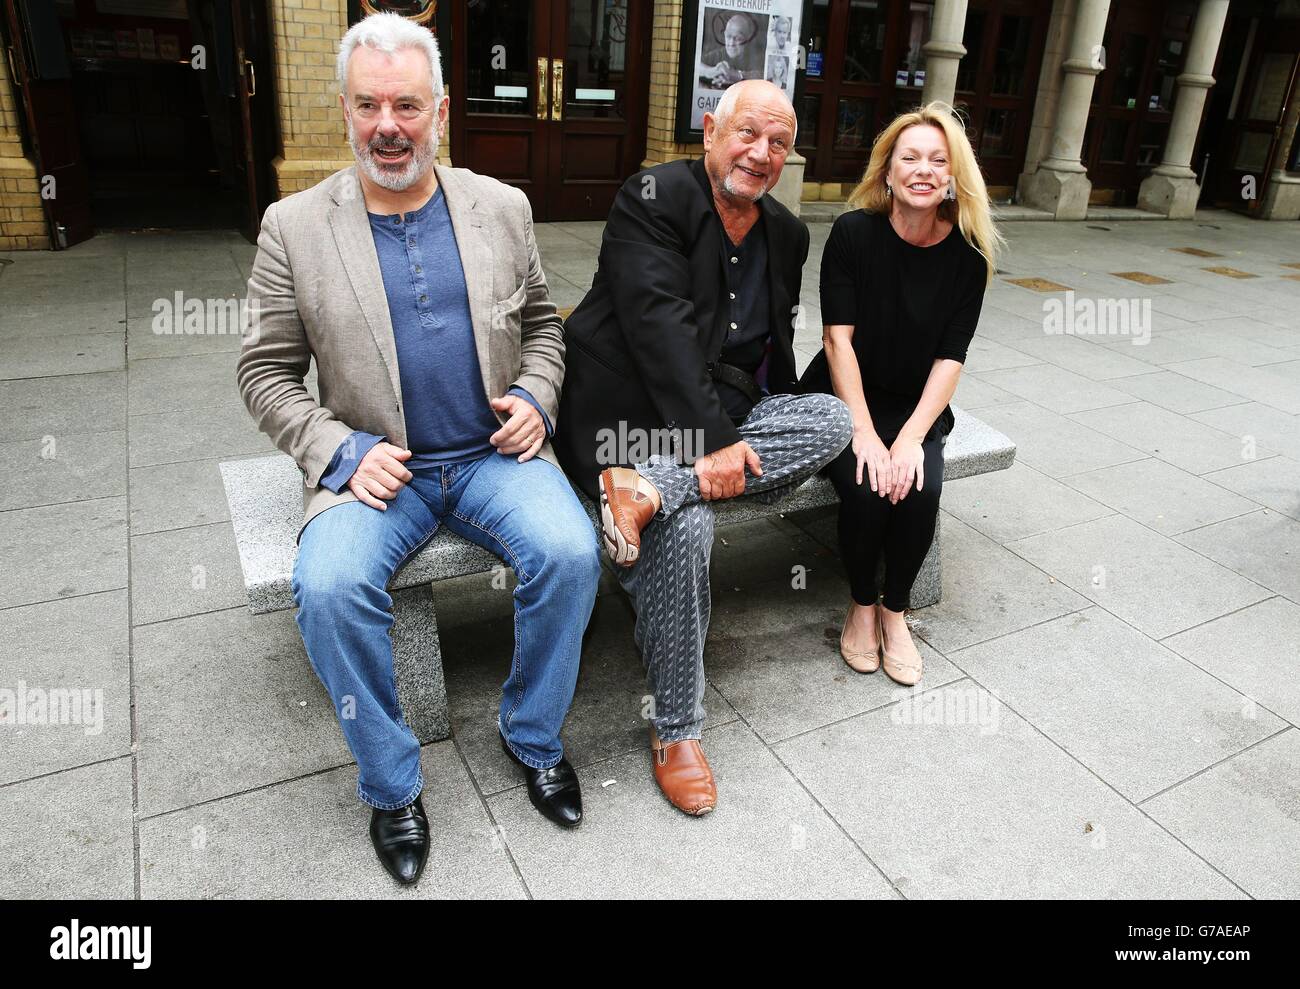 Attore, regista e drammaturgo Steven Berkoff (al centro) con gli attori Jay Benedict (a sinistra) e Andree Bernard, al Gaiety Theatre di Dublino, mentre porta l'attore Lament al Gaiety Theatre per una settimana solo a partire da questa sera. Foto Stock